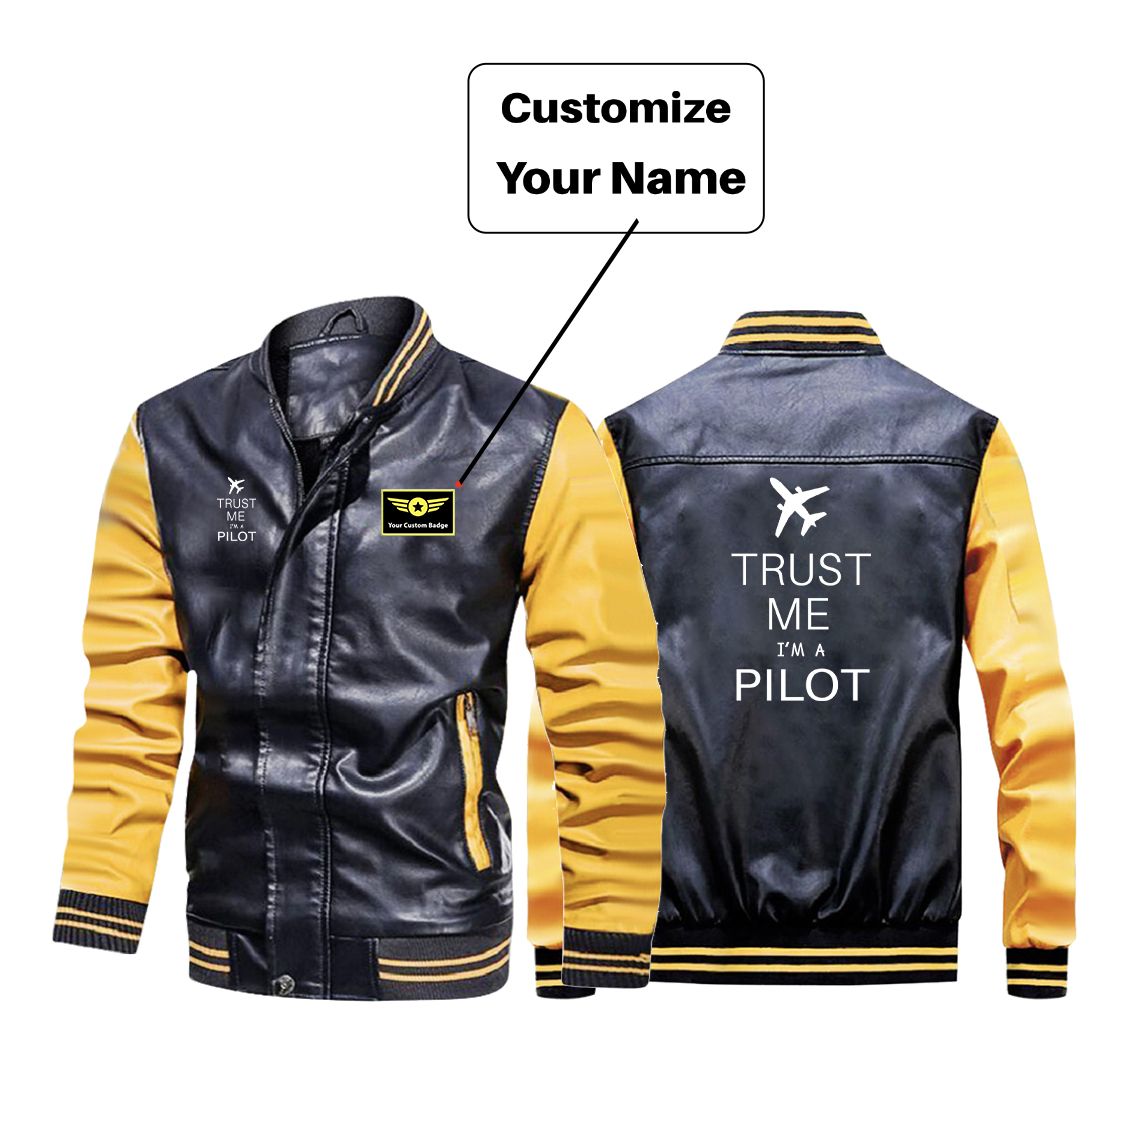 Trust Me I'm a Pilot 2 Designed Stylish Leather Bomber Jackets